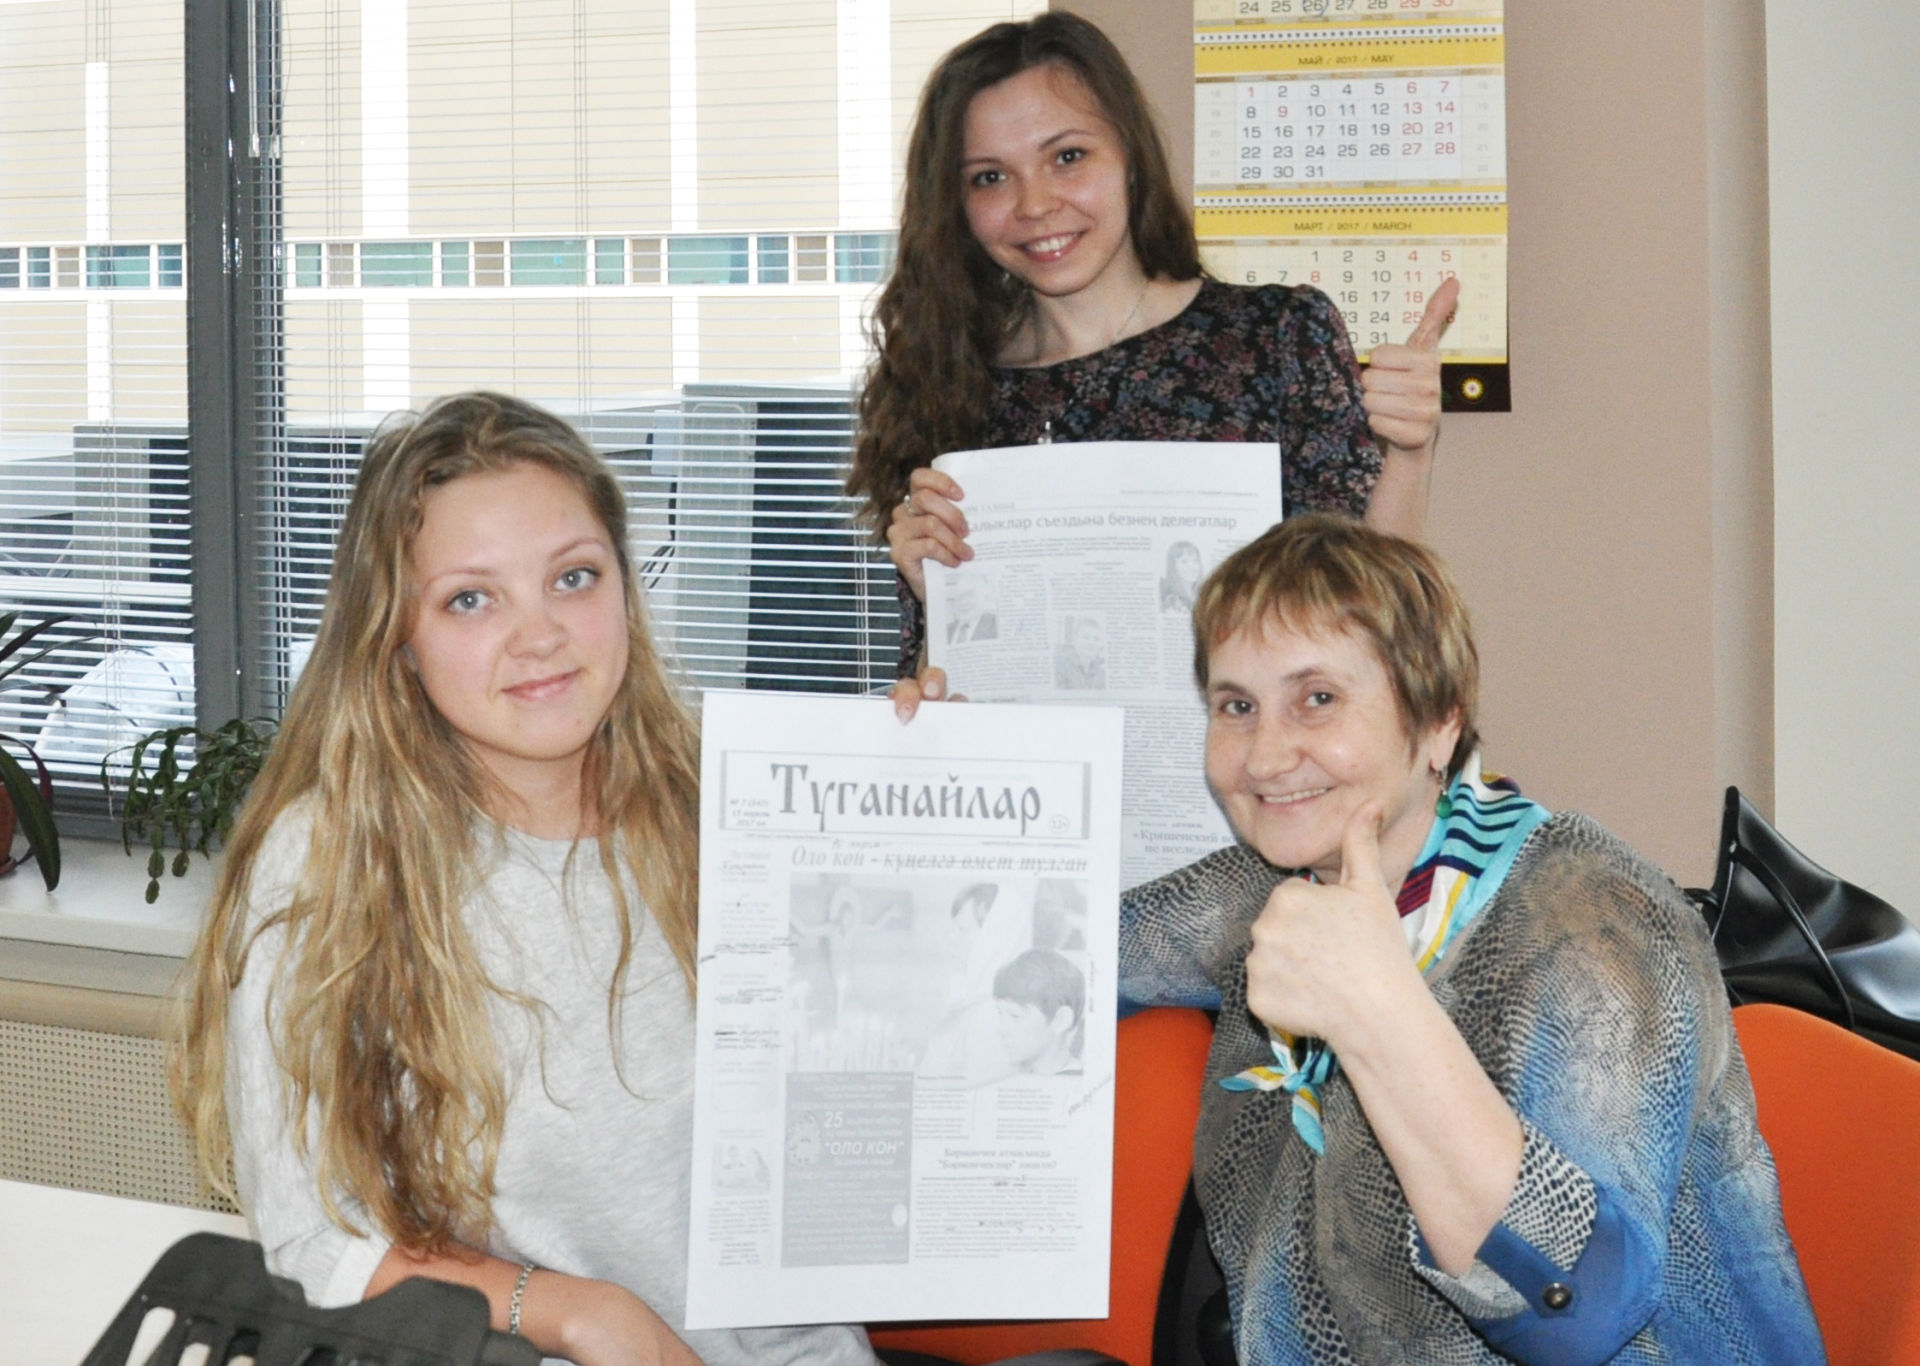 Юлия Губина: "Туганайлар" – күптәннән хыялланган, көтеп алынган дәүләт газетасы